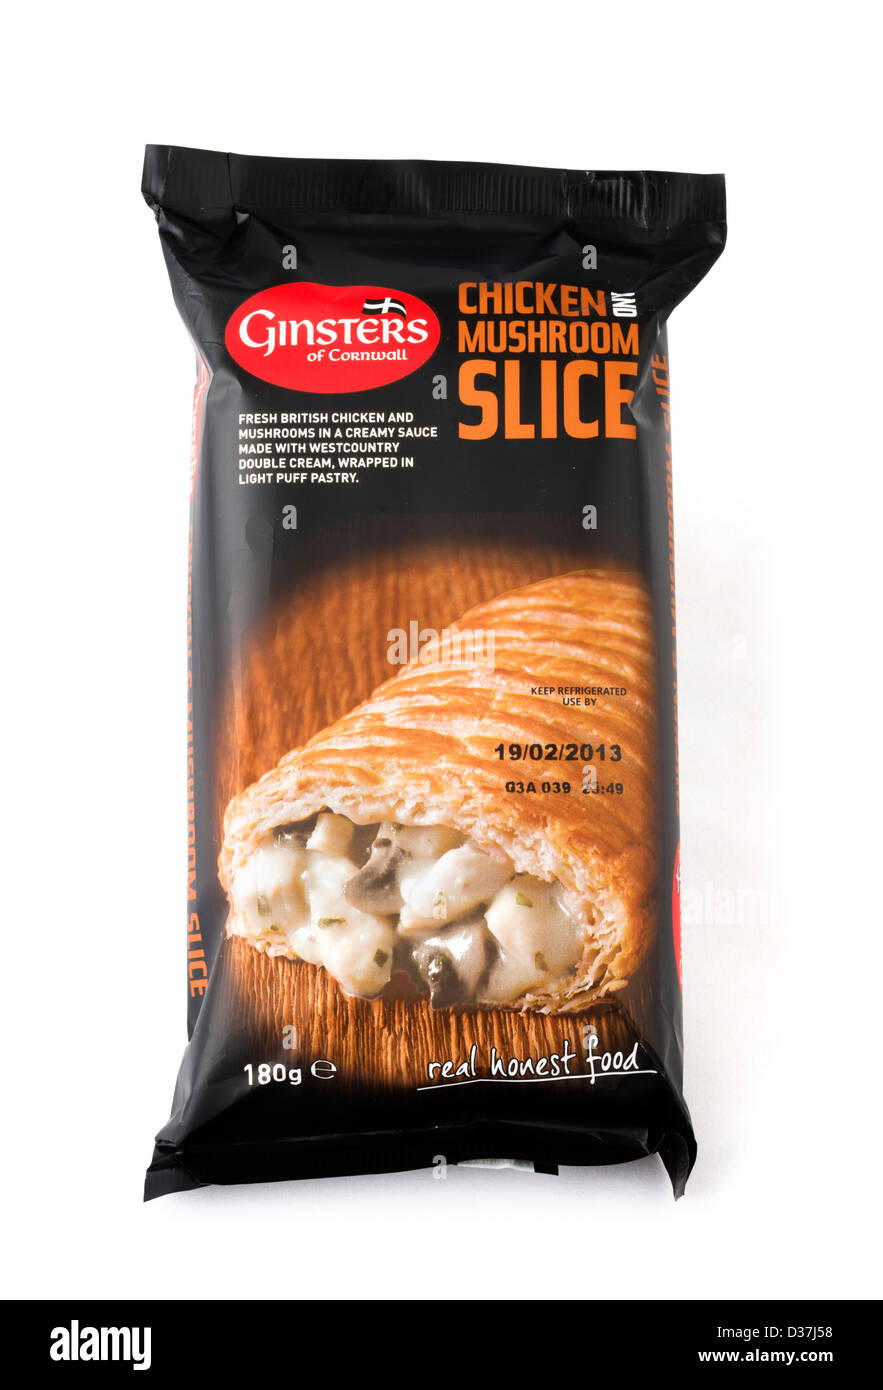 Ginsters Chicken and Mushroom Slice, UK Stock Photo